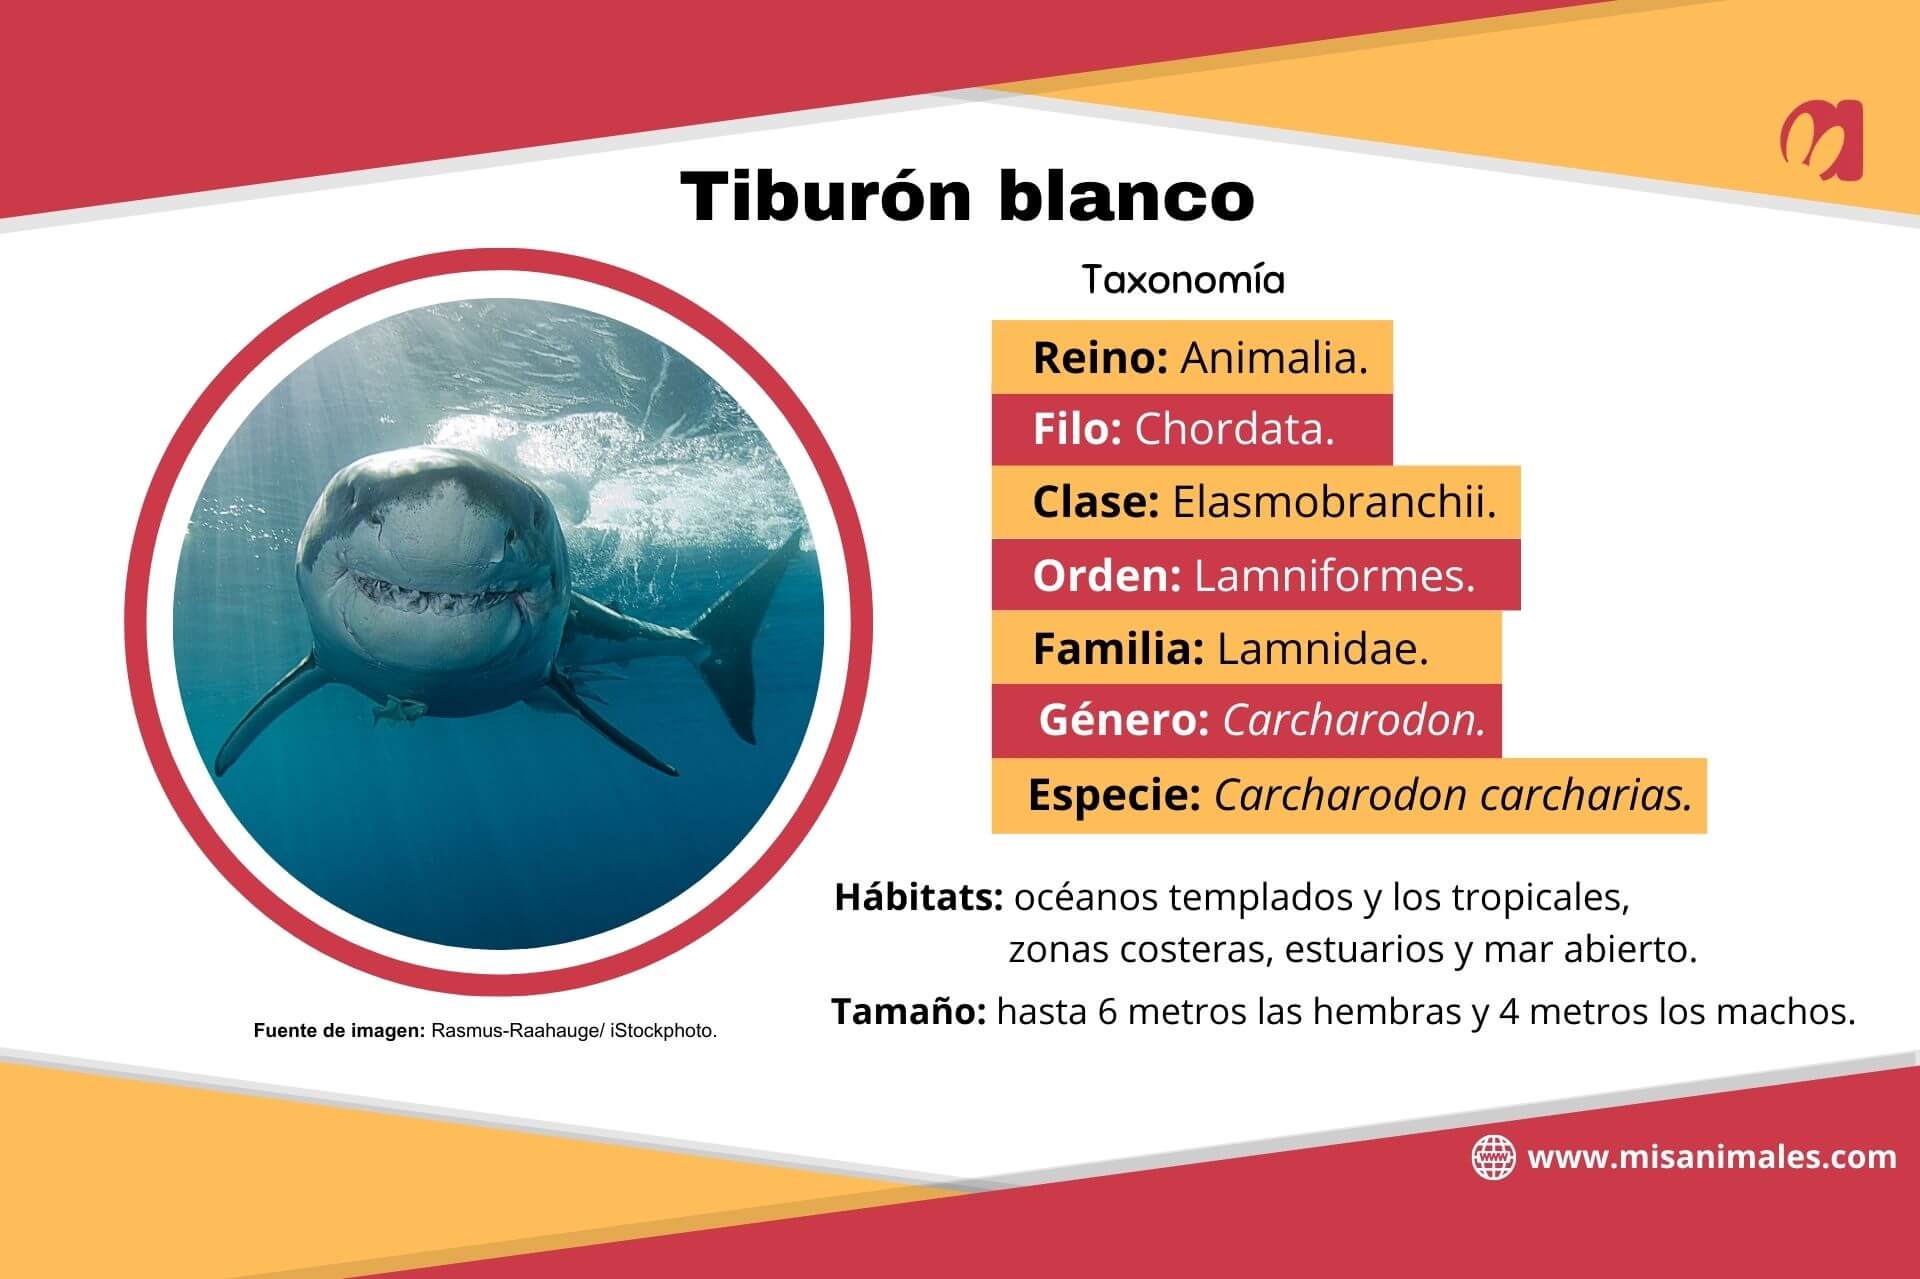 Ficha taxonómica sobre el tiburón blanco. 